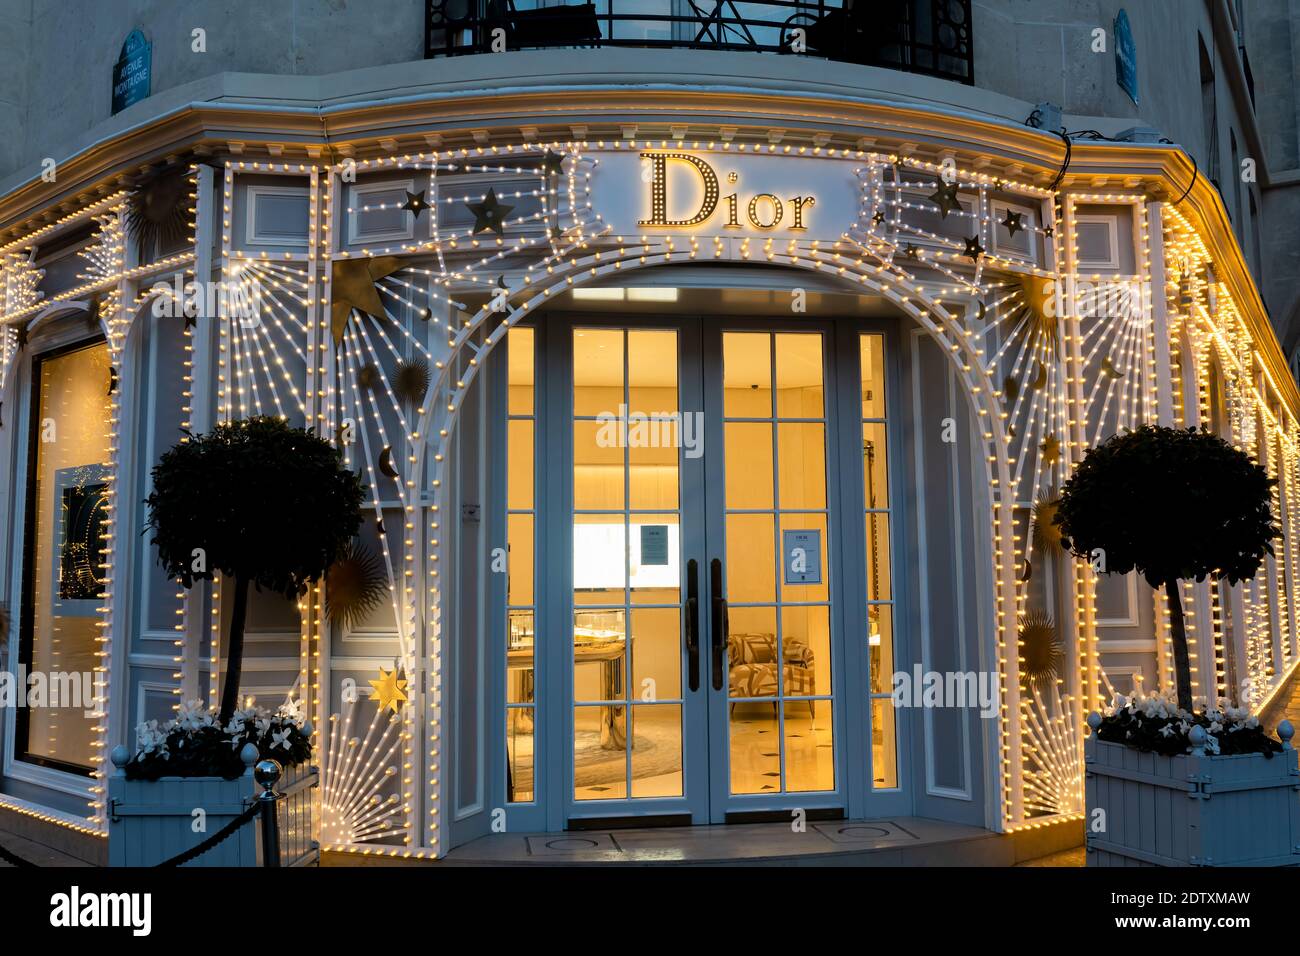 Dior avec lumières de Noël sur l'avenue Montaigne - Paris, France Banque D'Images